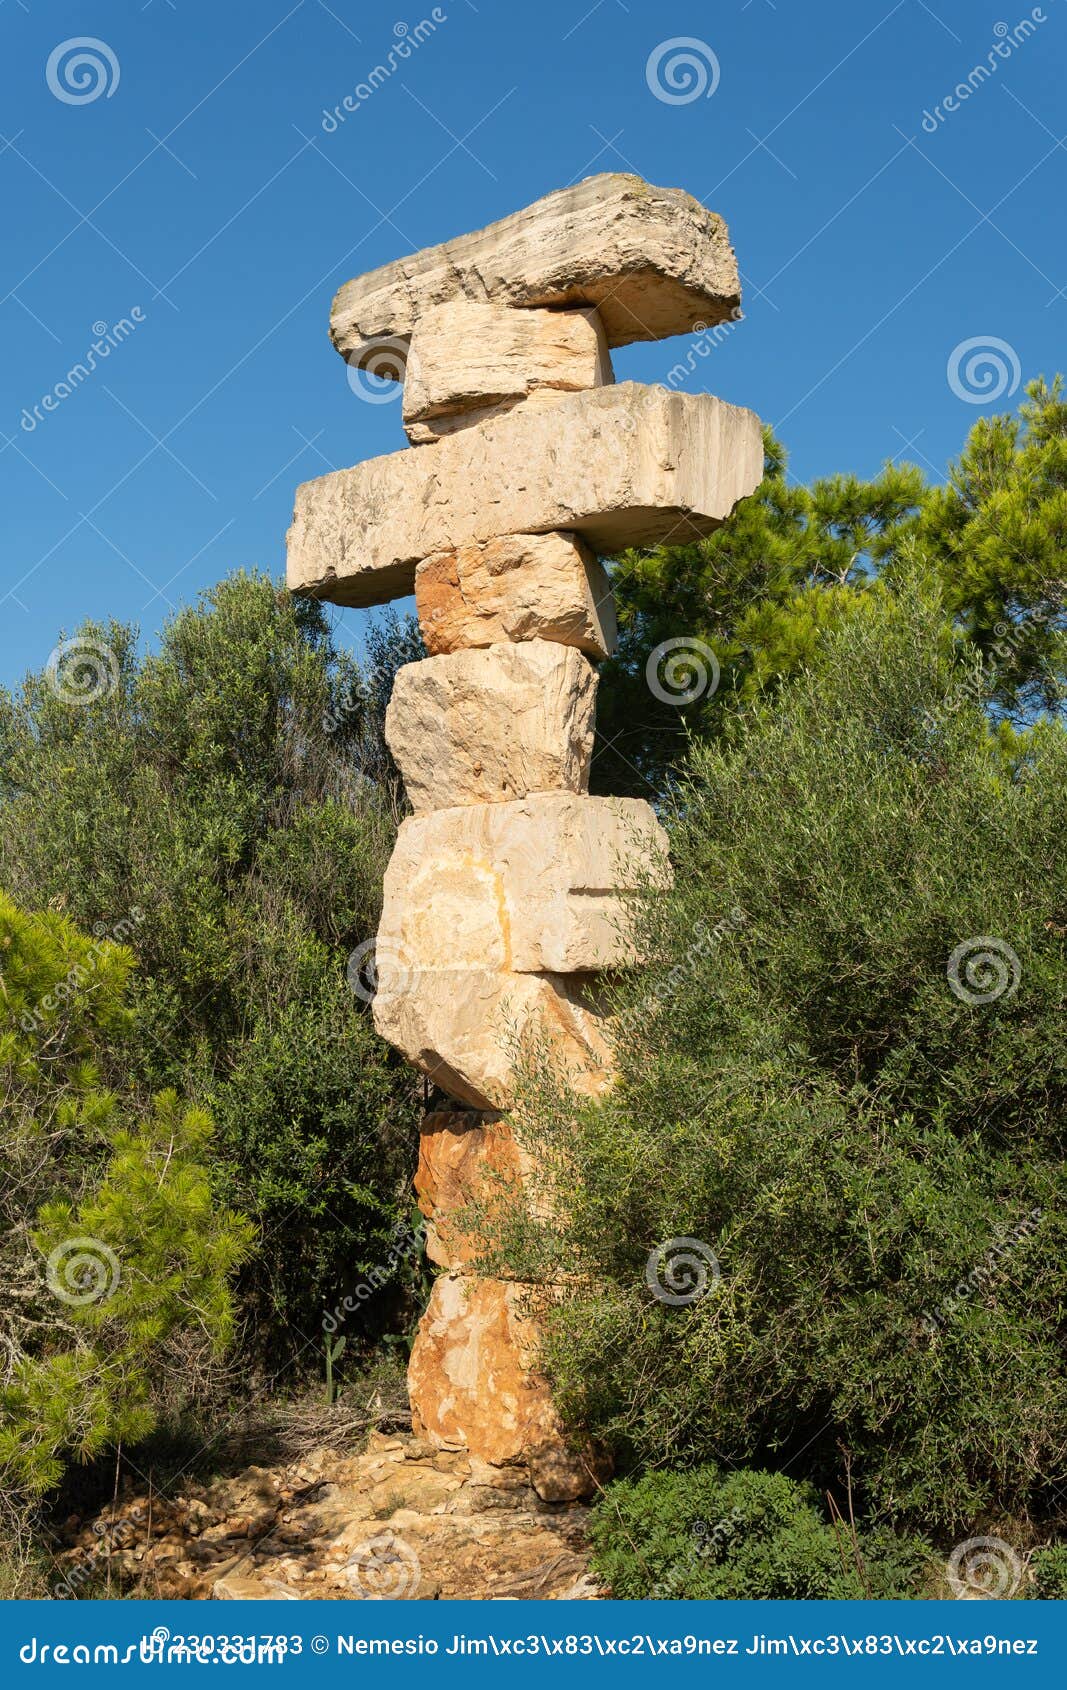 monolith of superimposed stones in mallorca